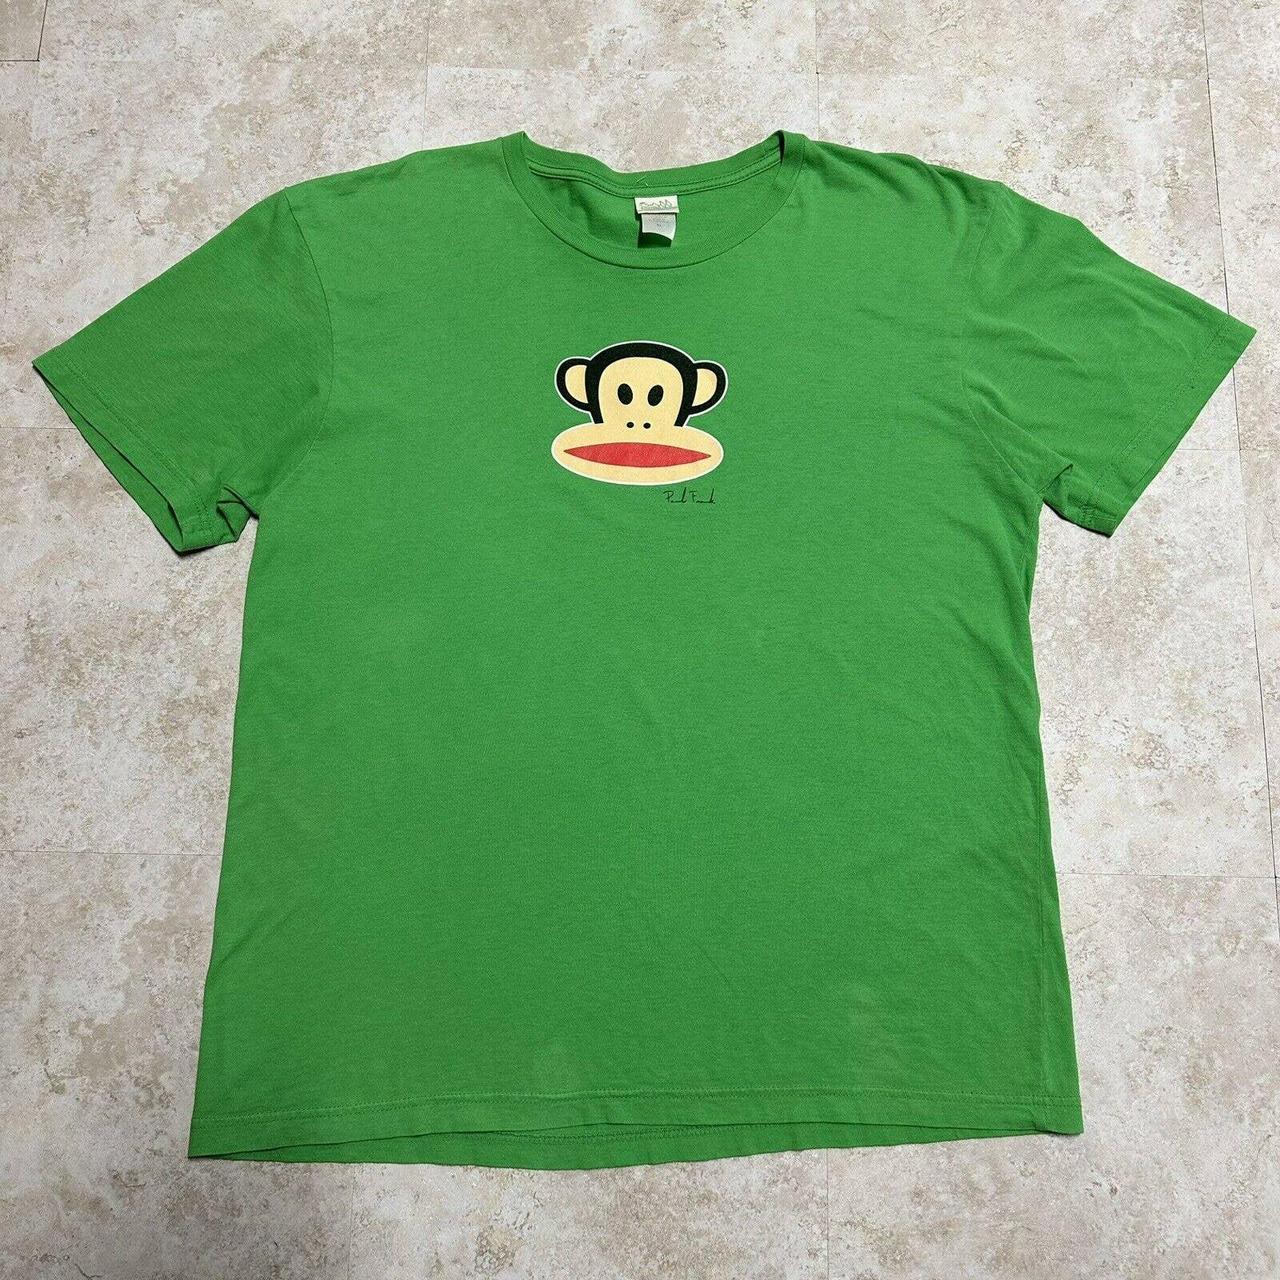 Paul Frank Men's Green T-shirt | Depop